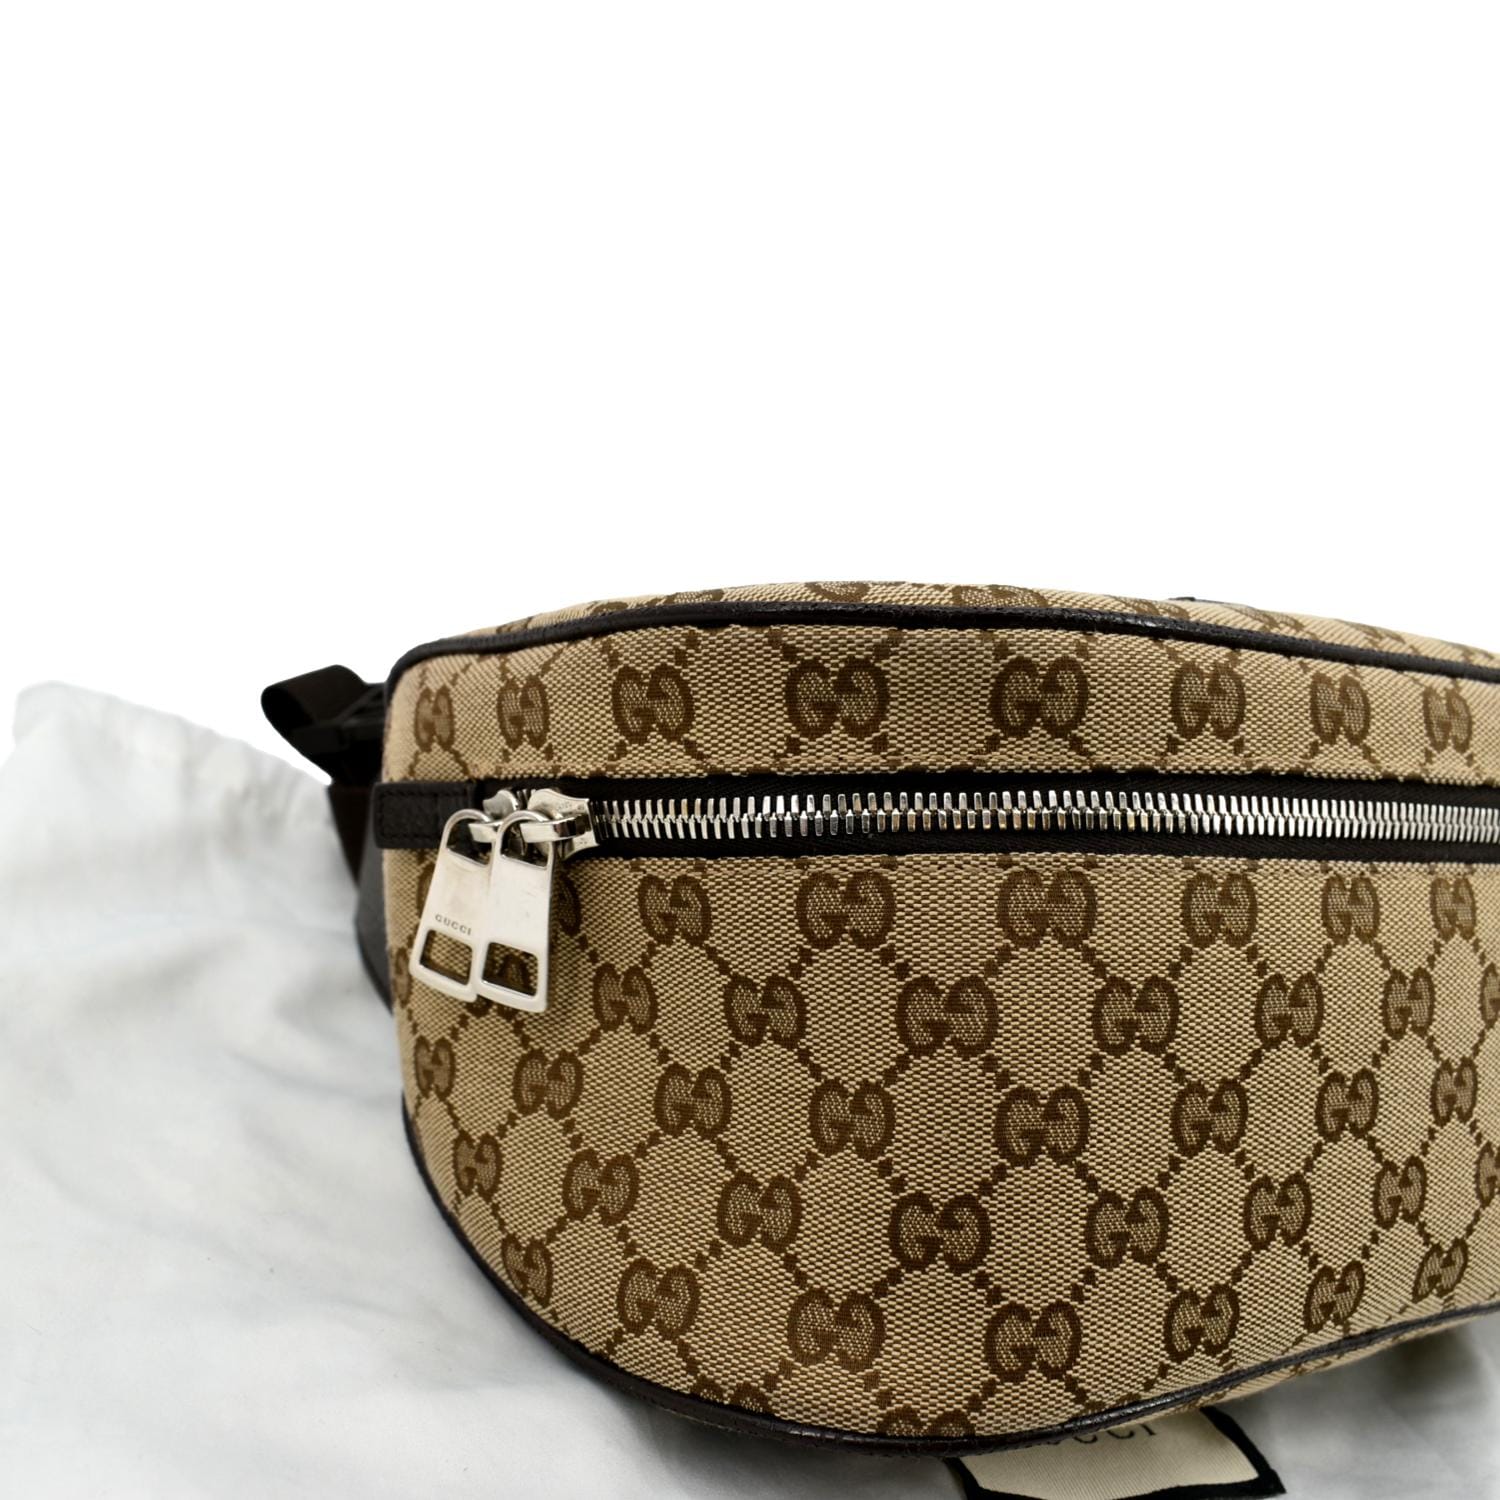 Gucci GG Canvas Belt Bag - Neutrals Waist Bags, Handbags - GUC1191630